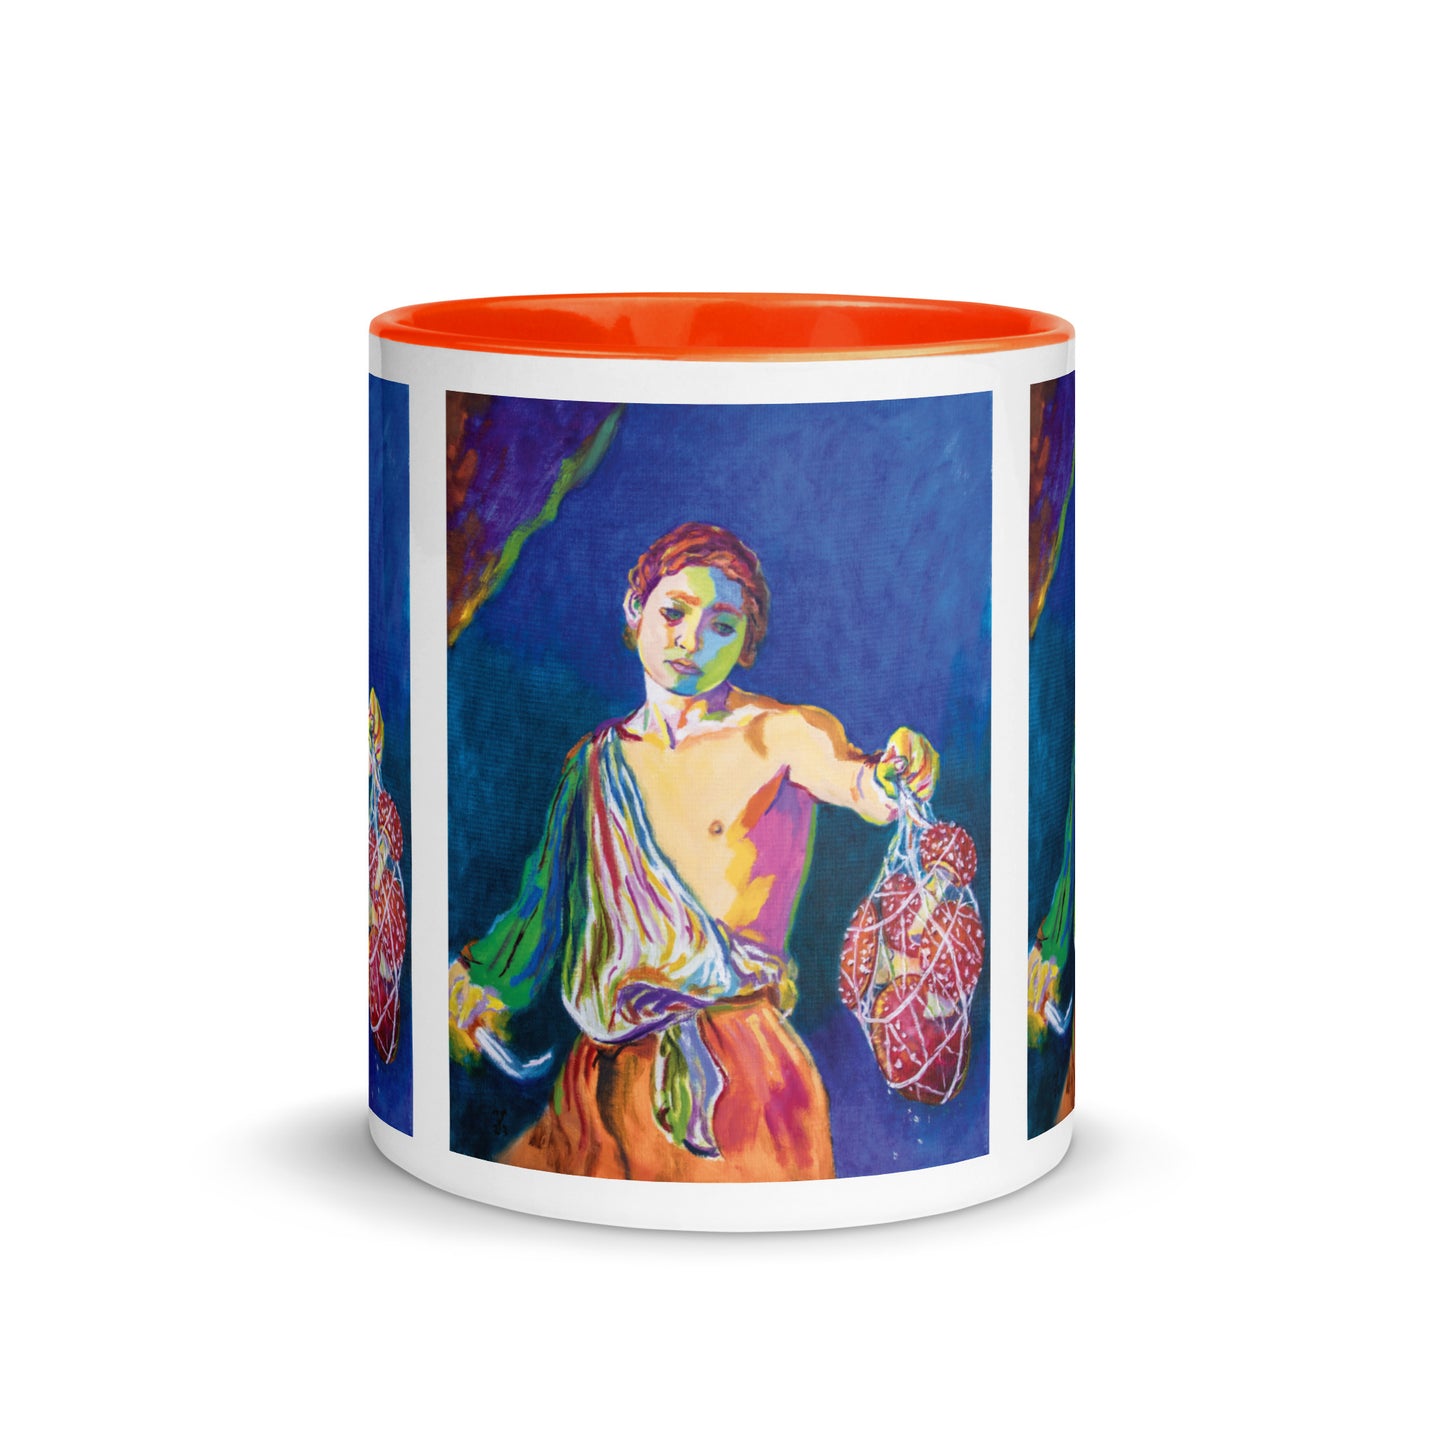 David and the Amanitas Mug with Color Inside